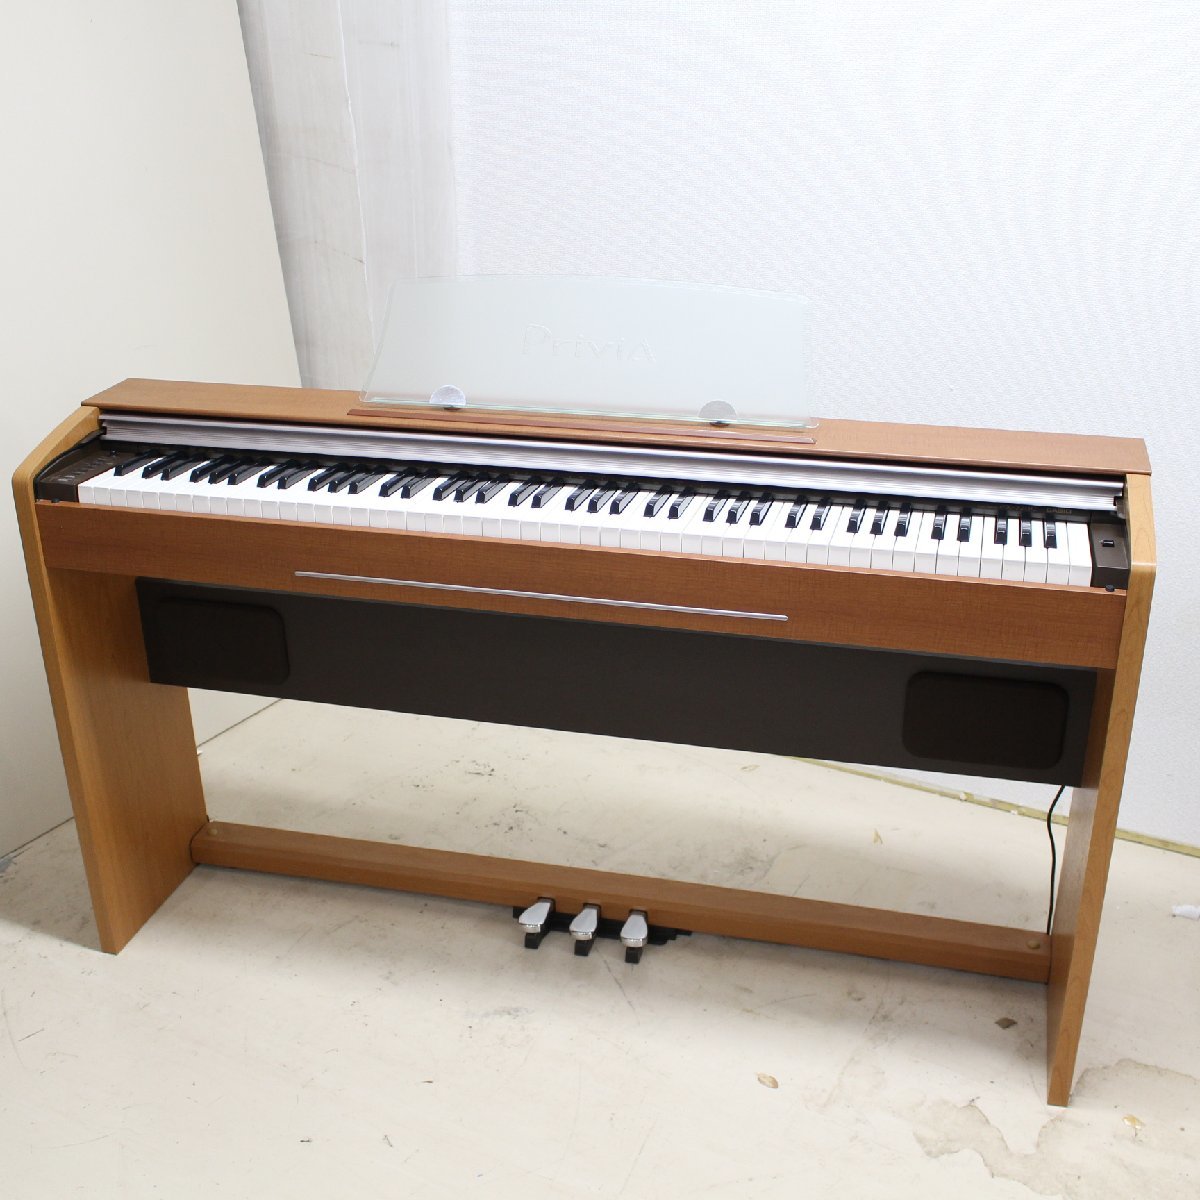 東京都渋谷区にて カシオ Privia 電子ピアノ PX-720C  2009年製 を出張買取させて頂きました。